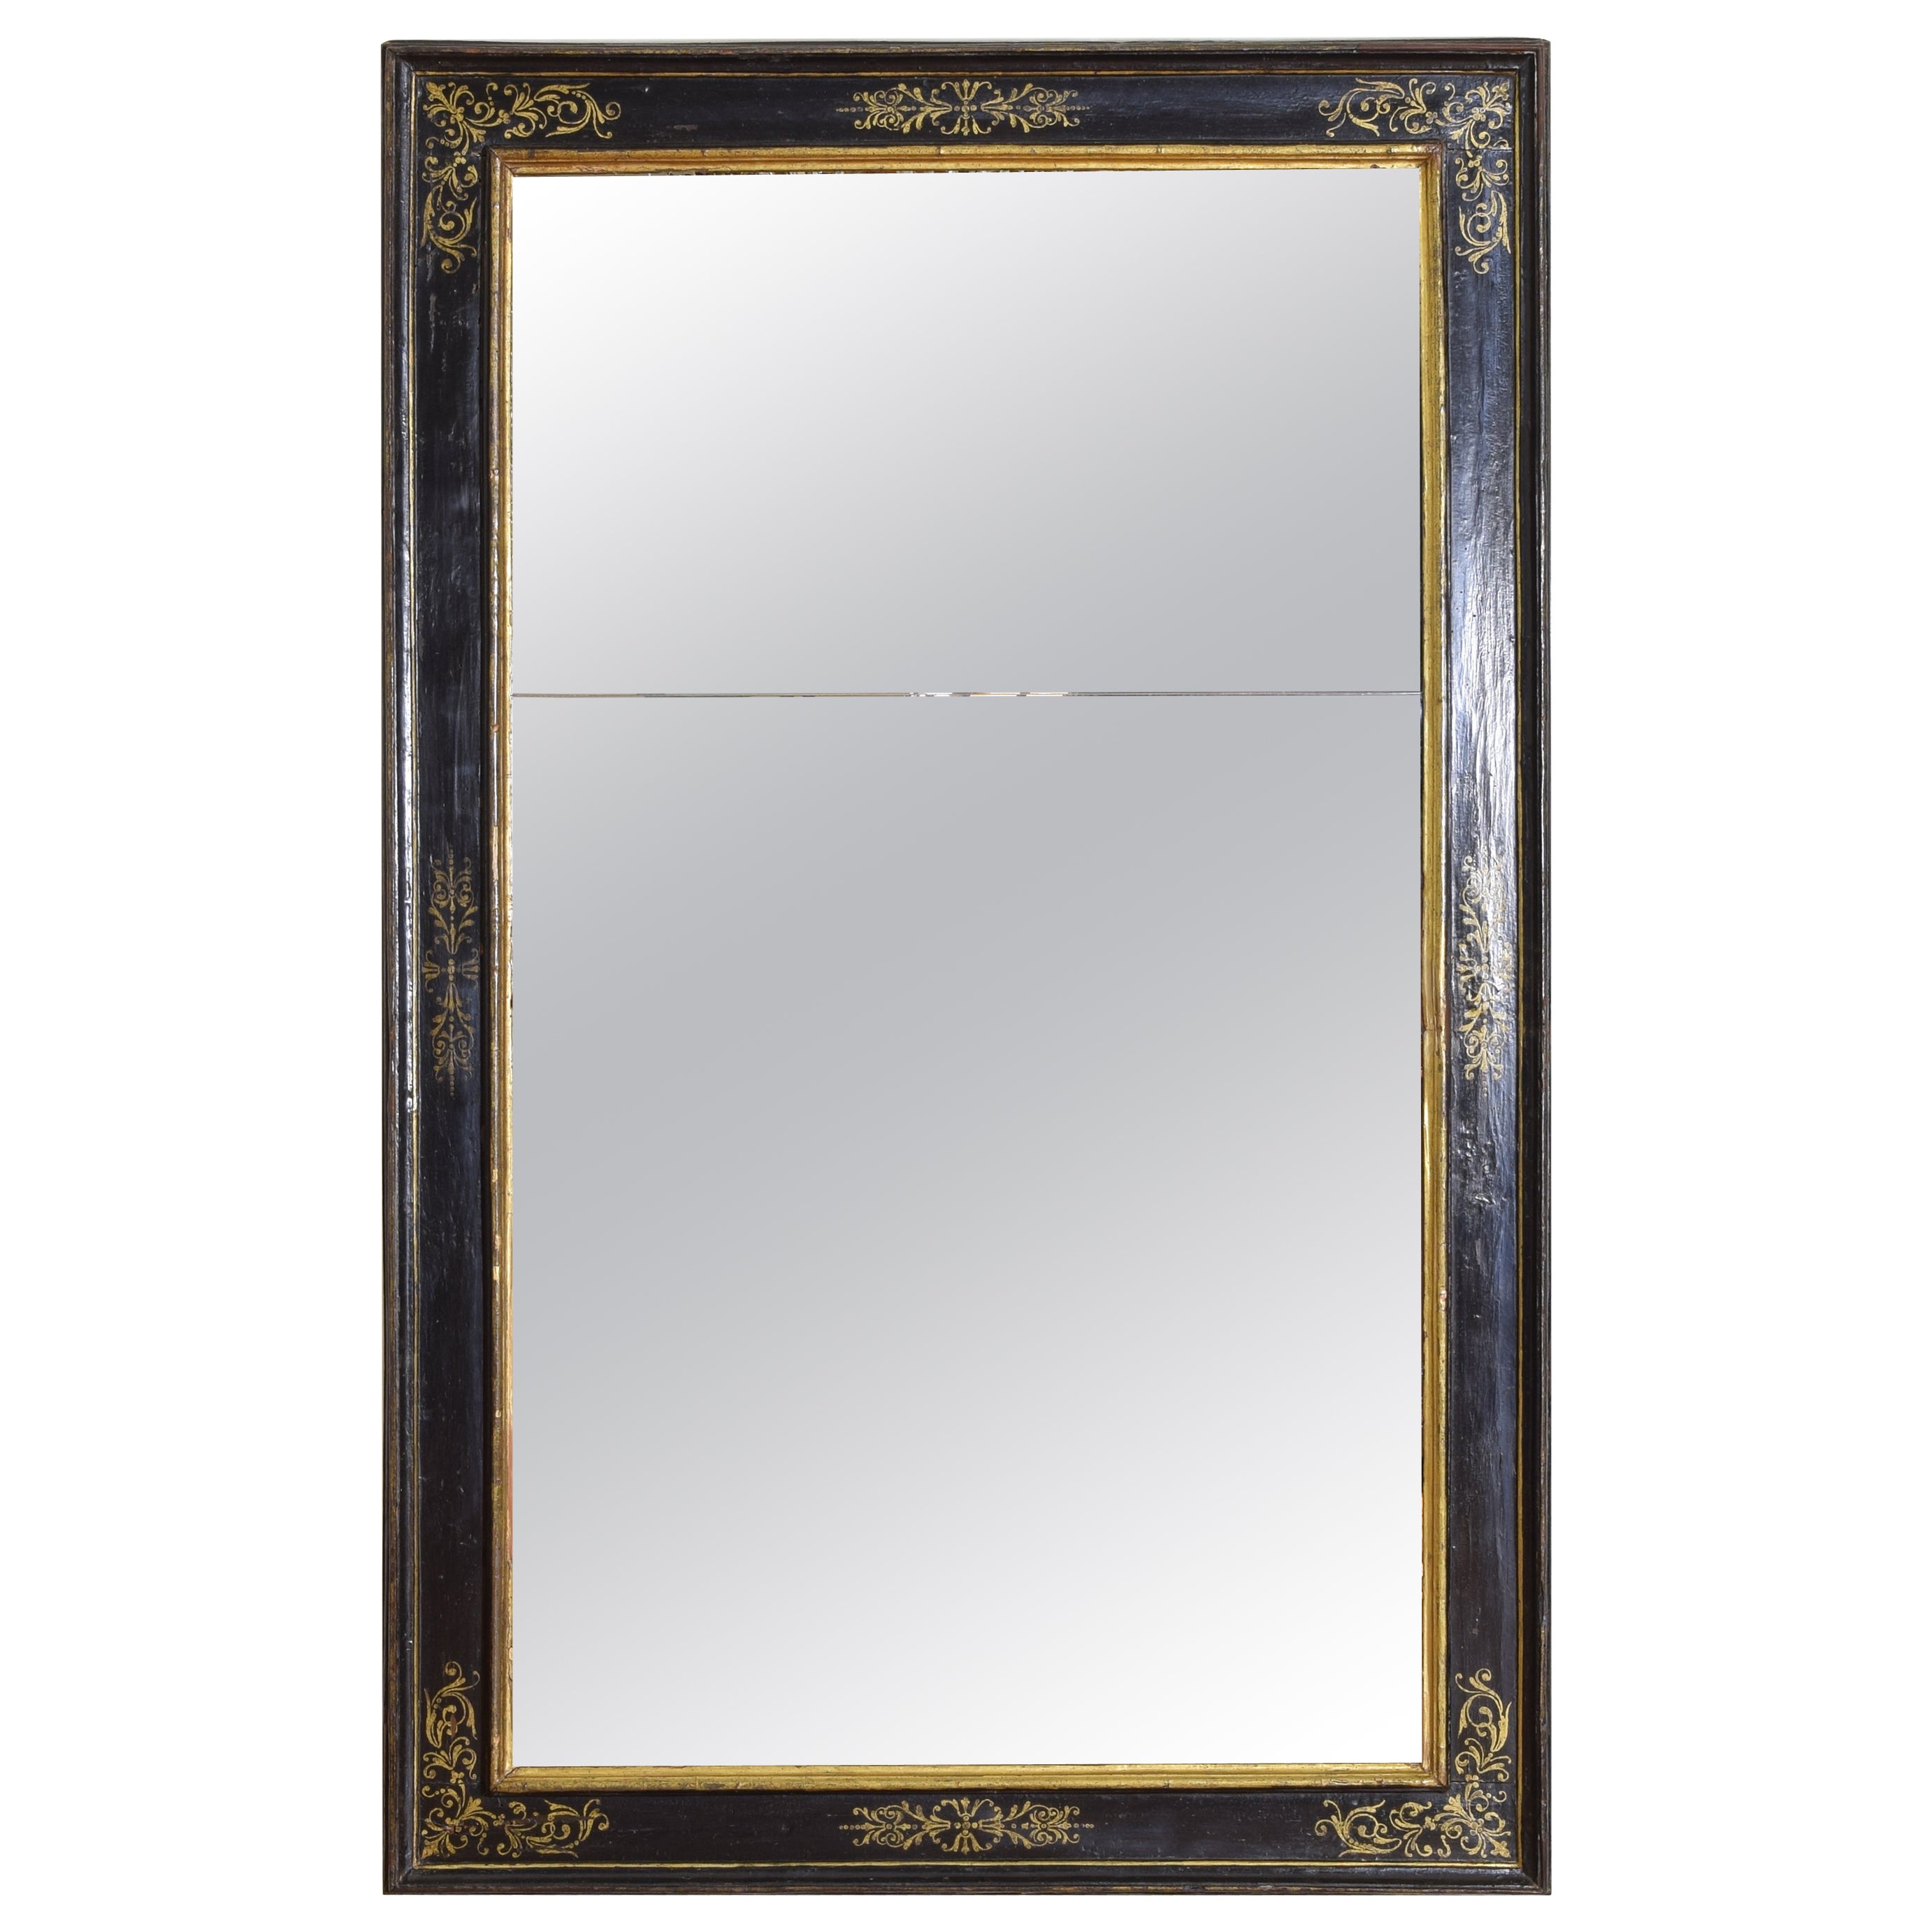 Italienischer, ebonisierter und vergoldeter italienischer Spiegel aus Firenze, spte Renaissance, 17. Jahrhundert.